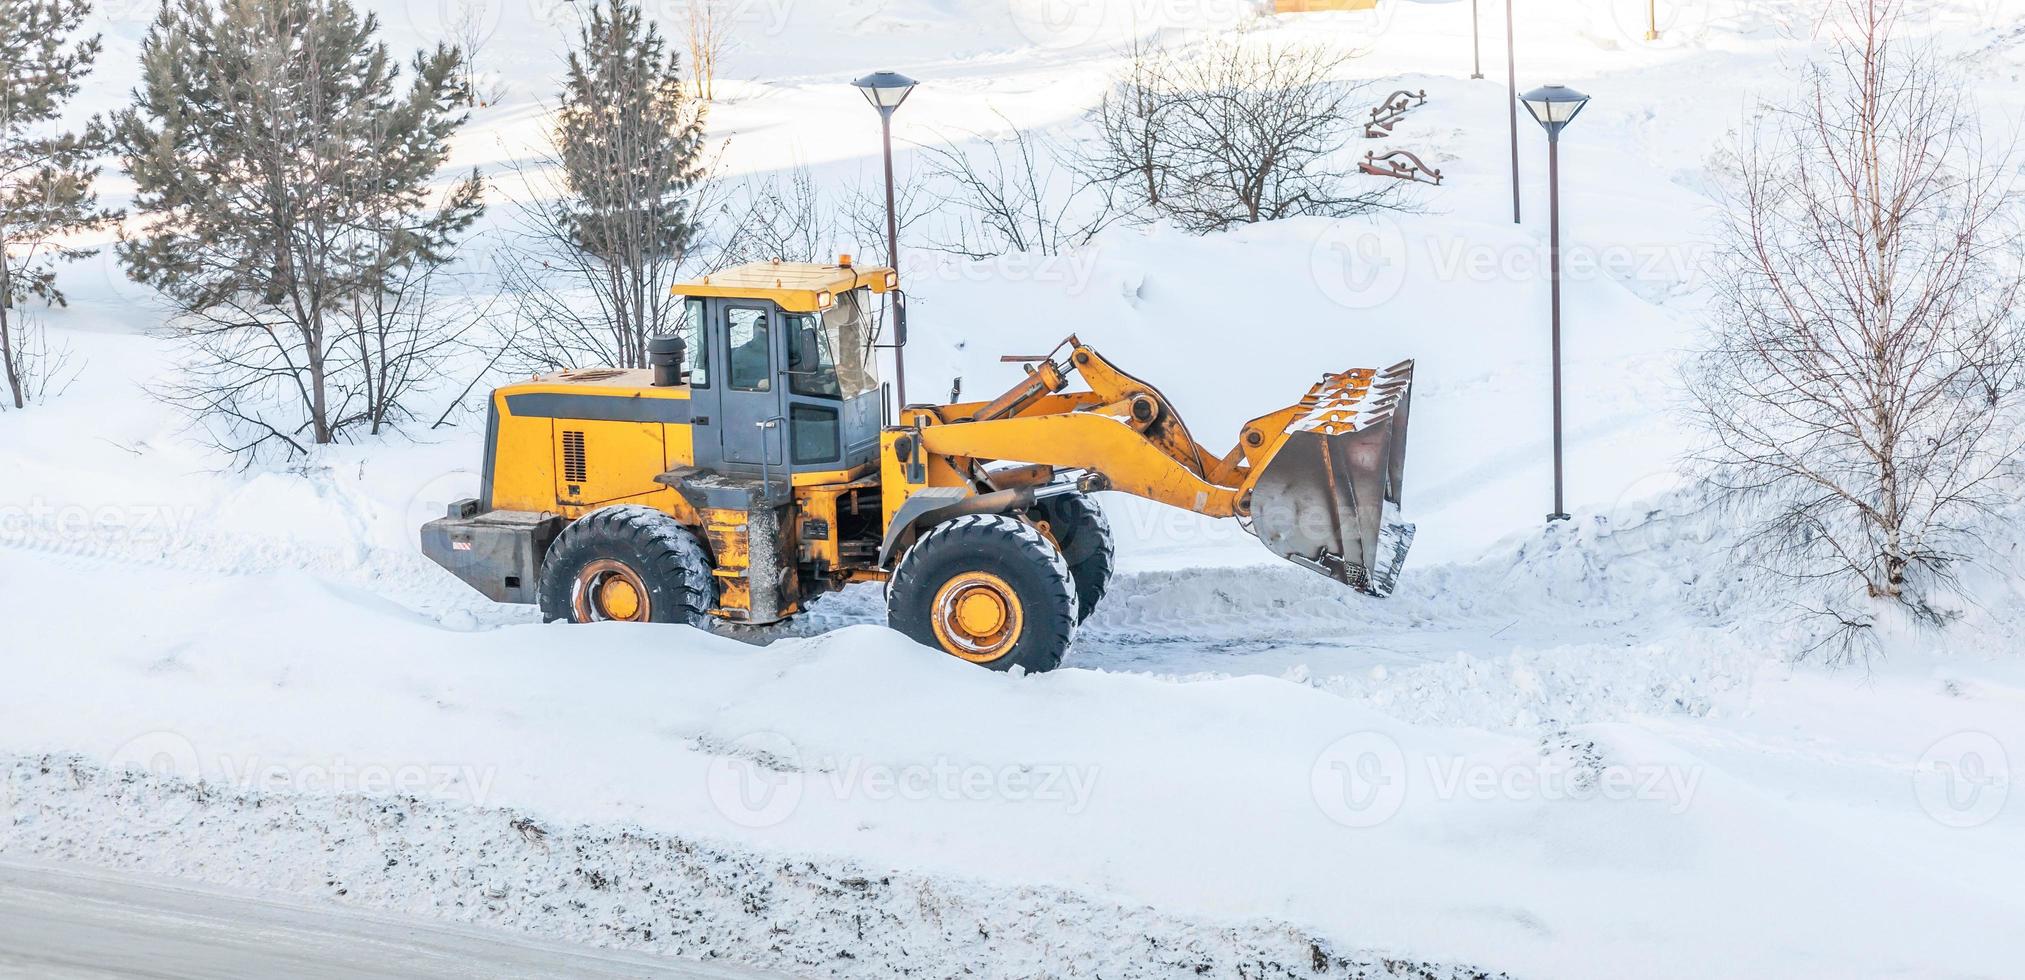 Schneeräumung. Traktor macht den Weg nach starkem Schneefall frei. Ein großer orangefarbener Traktor entfernt Schnee von der Straße und räumt den Bürgersteig. reinigung der straßen in der stadt im winter von schnee. foto